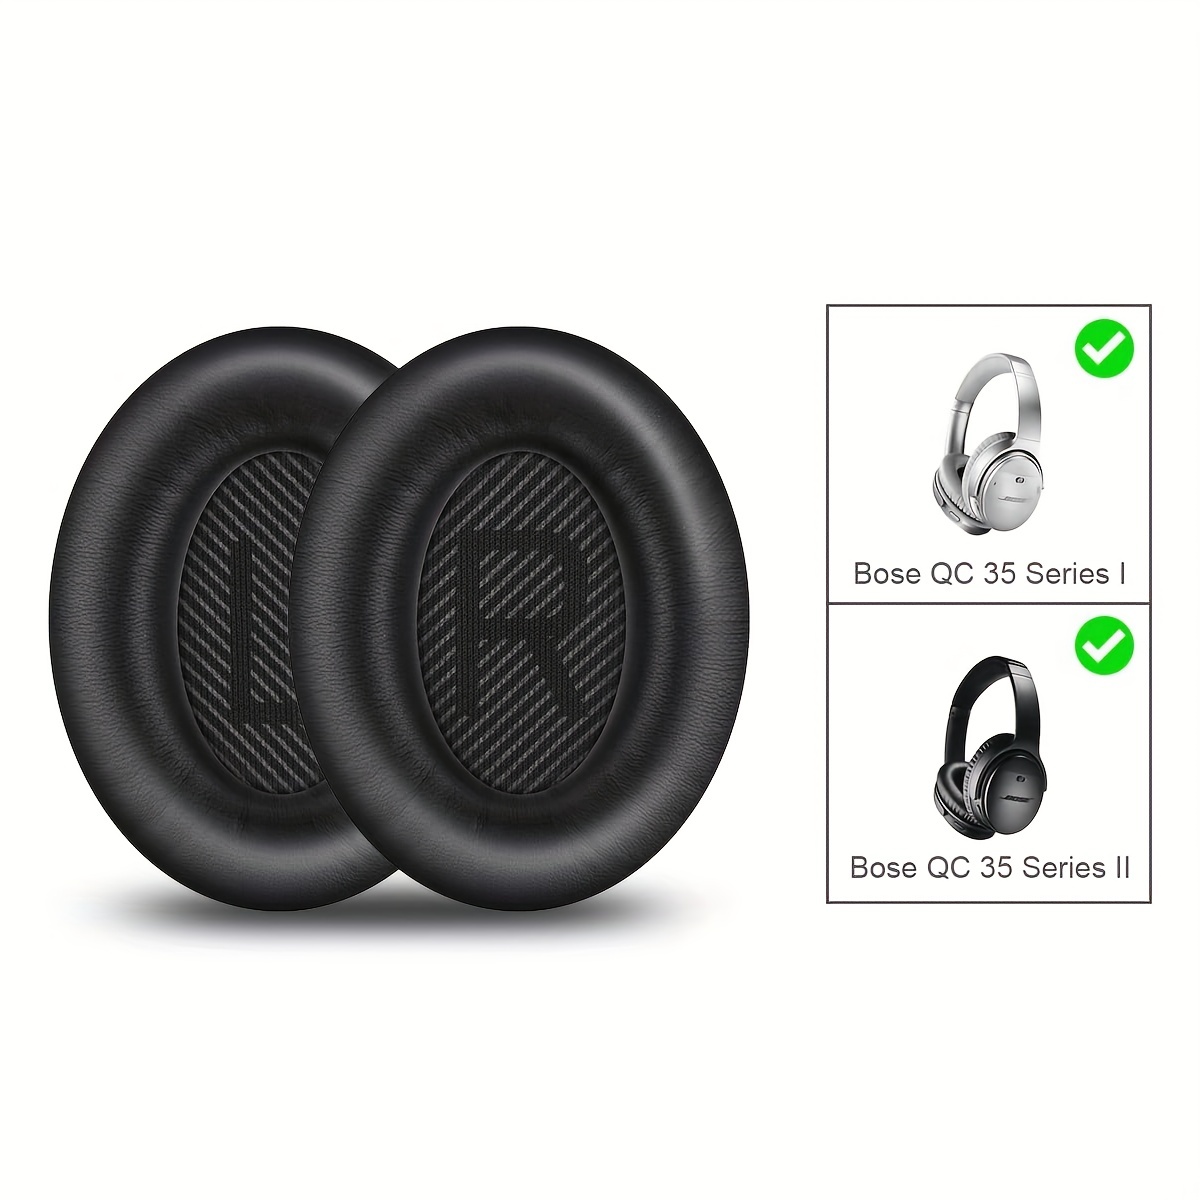 Almohadillas para auriculares - Almohadillas para auriculares Bose